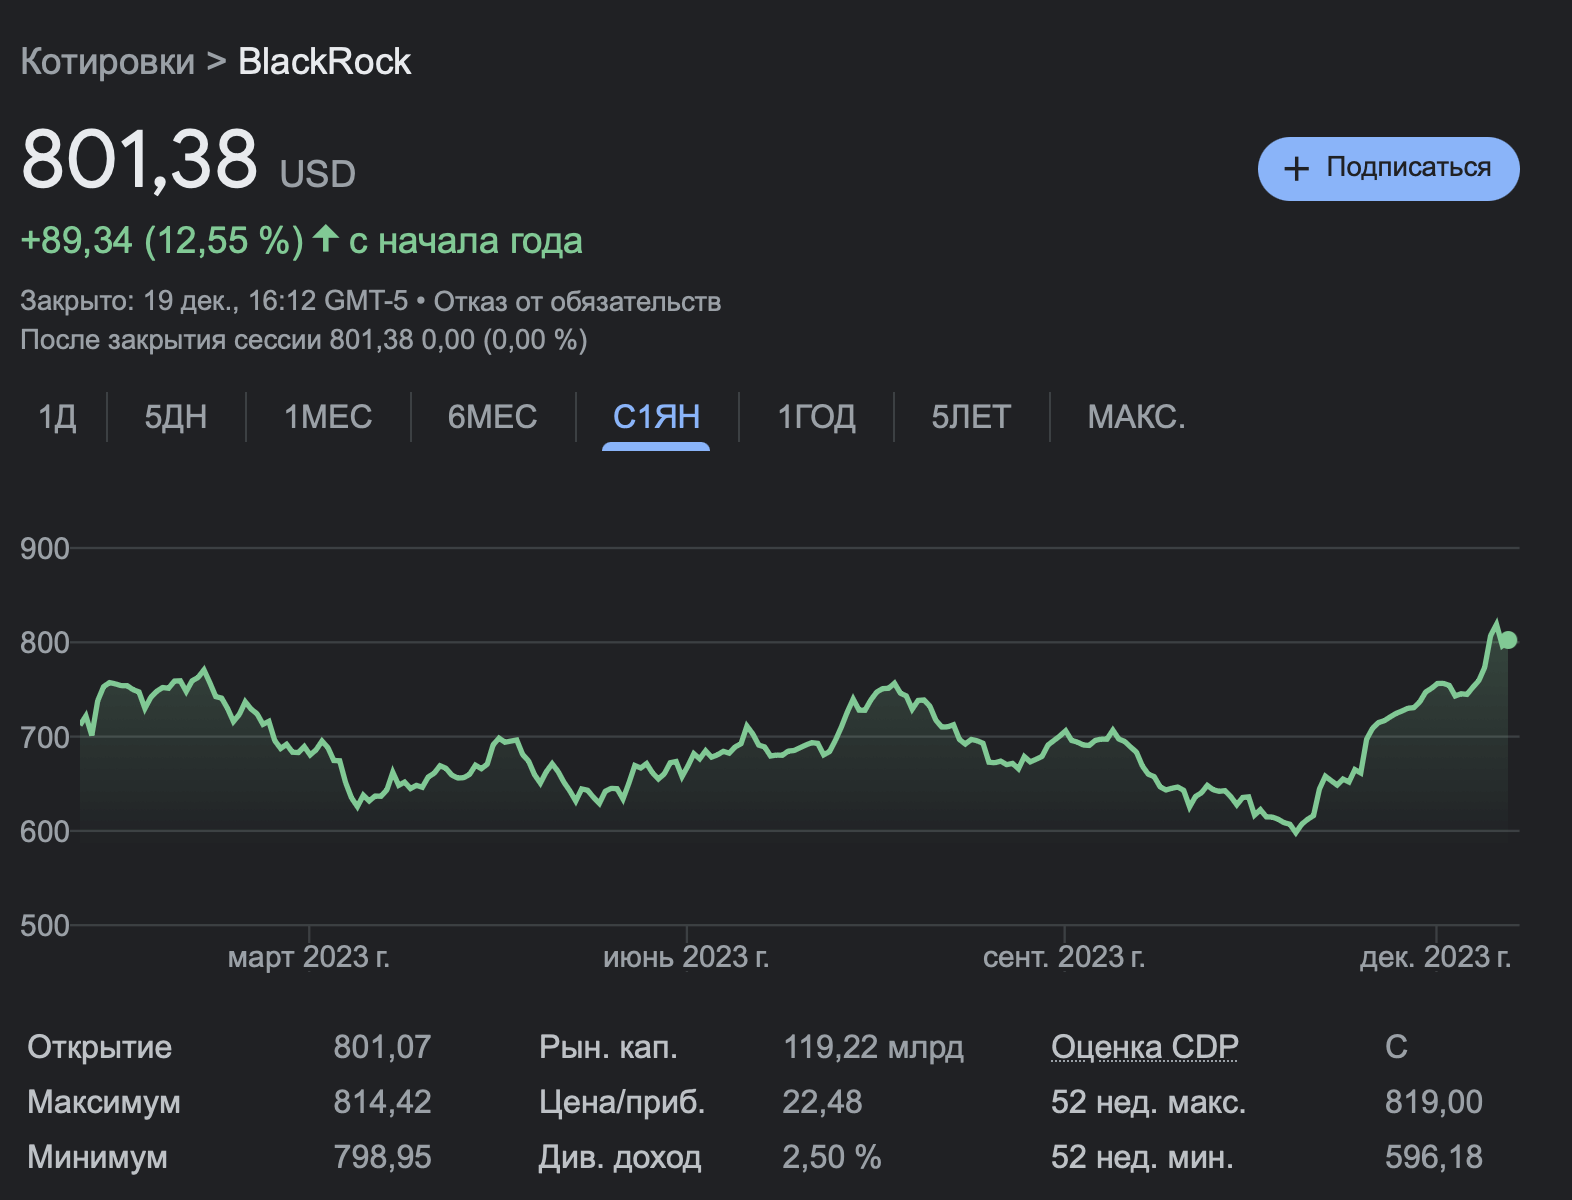 Когда запустят Биткоин-ETF от BlackRock. Изменения стоимости акций BlackRock с начала года. Фото.